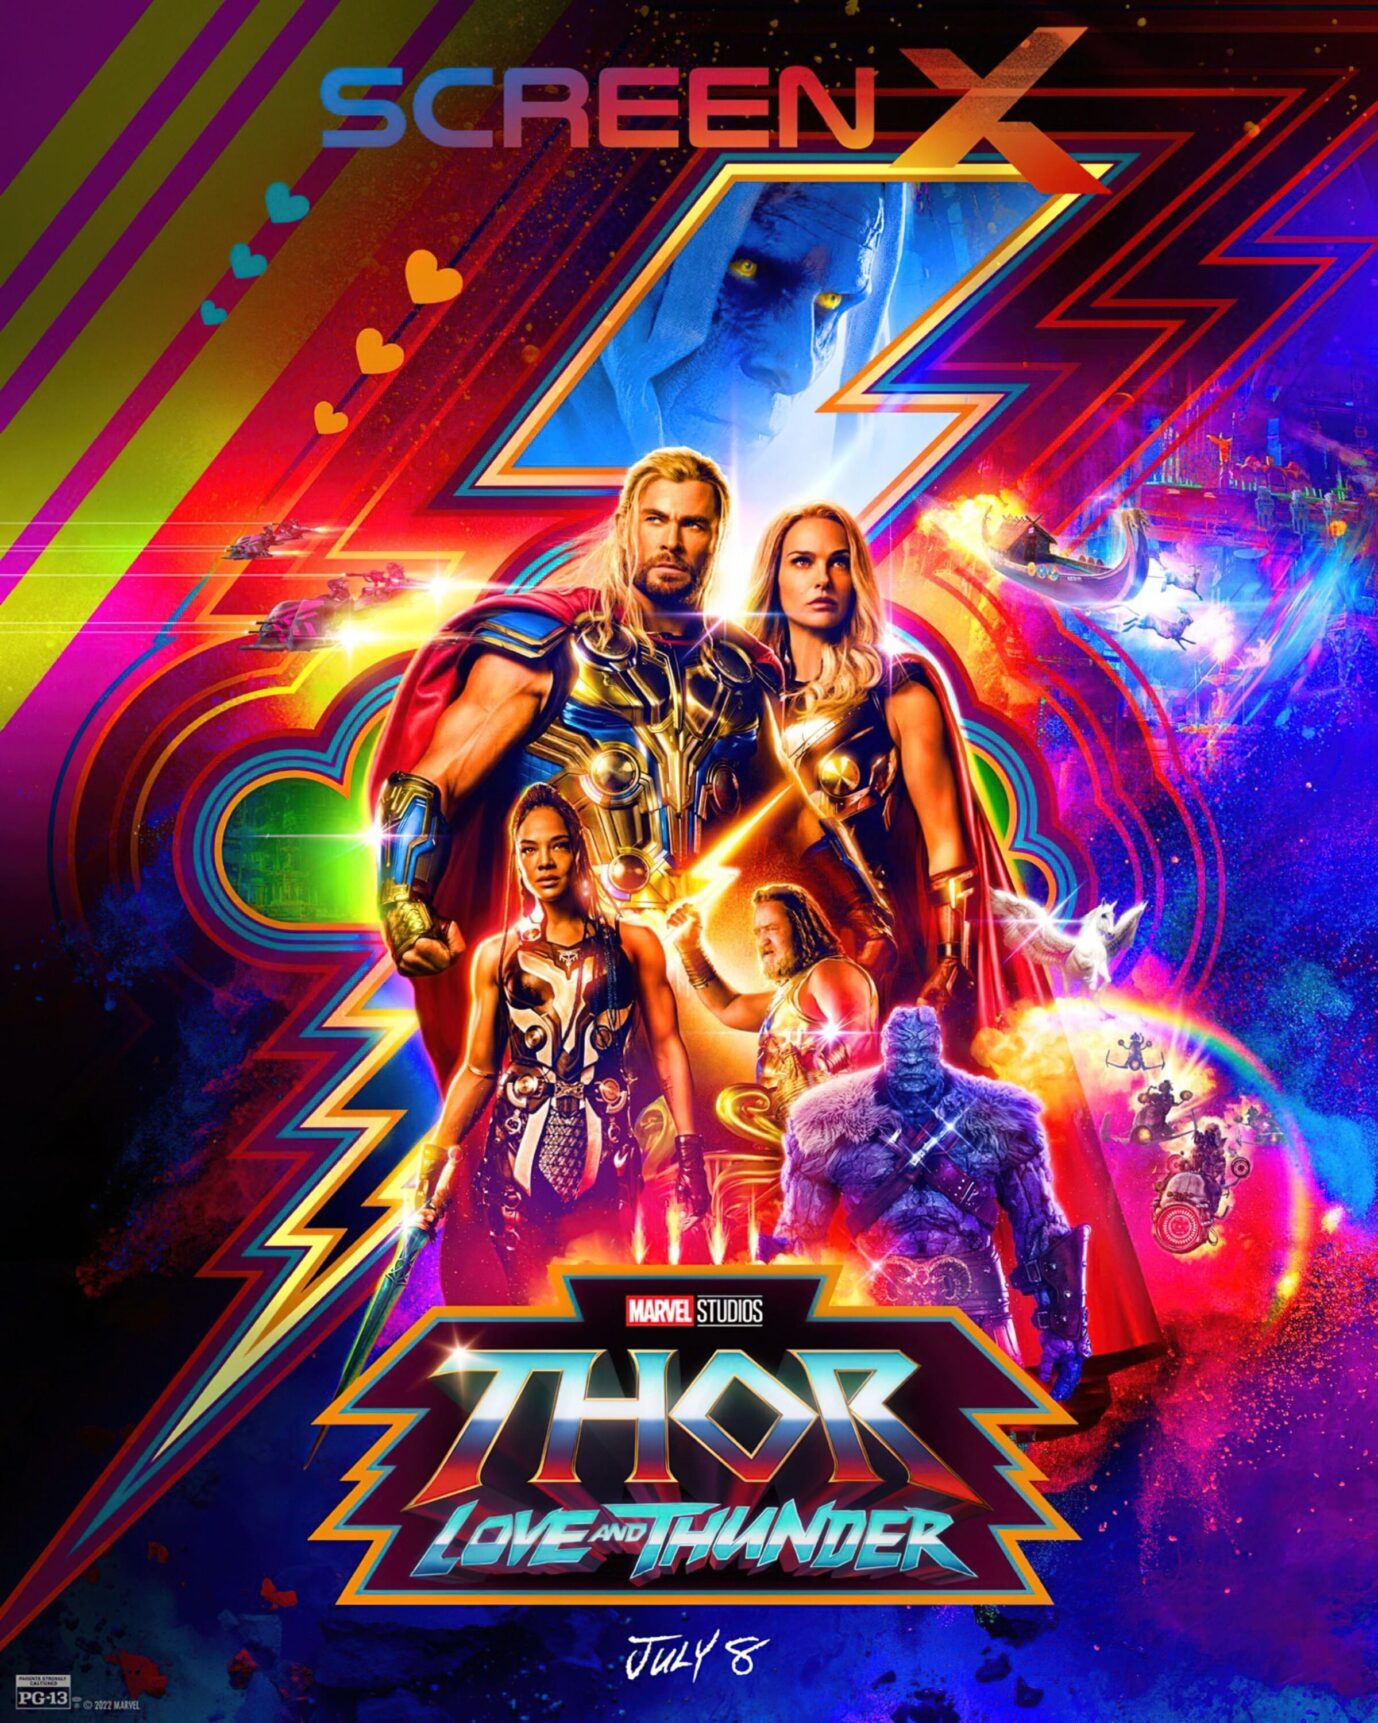 Der neue Thor-Film bietet übliche Marvel-Qualität Foto: picture alliance / Everett Collection | ©Walt Disney Co./Courtesy Everett Collection